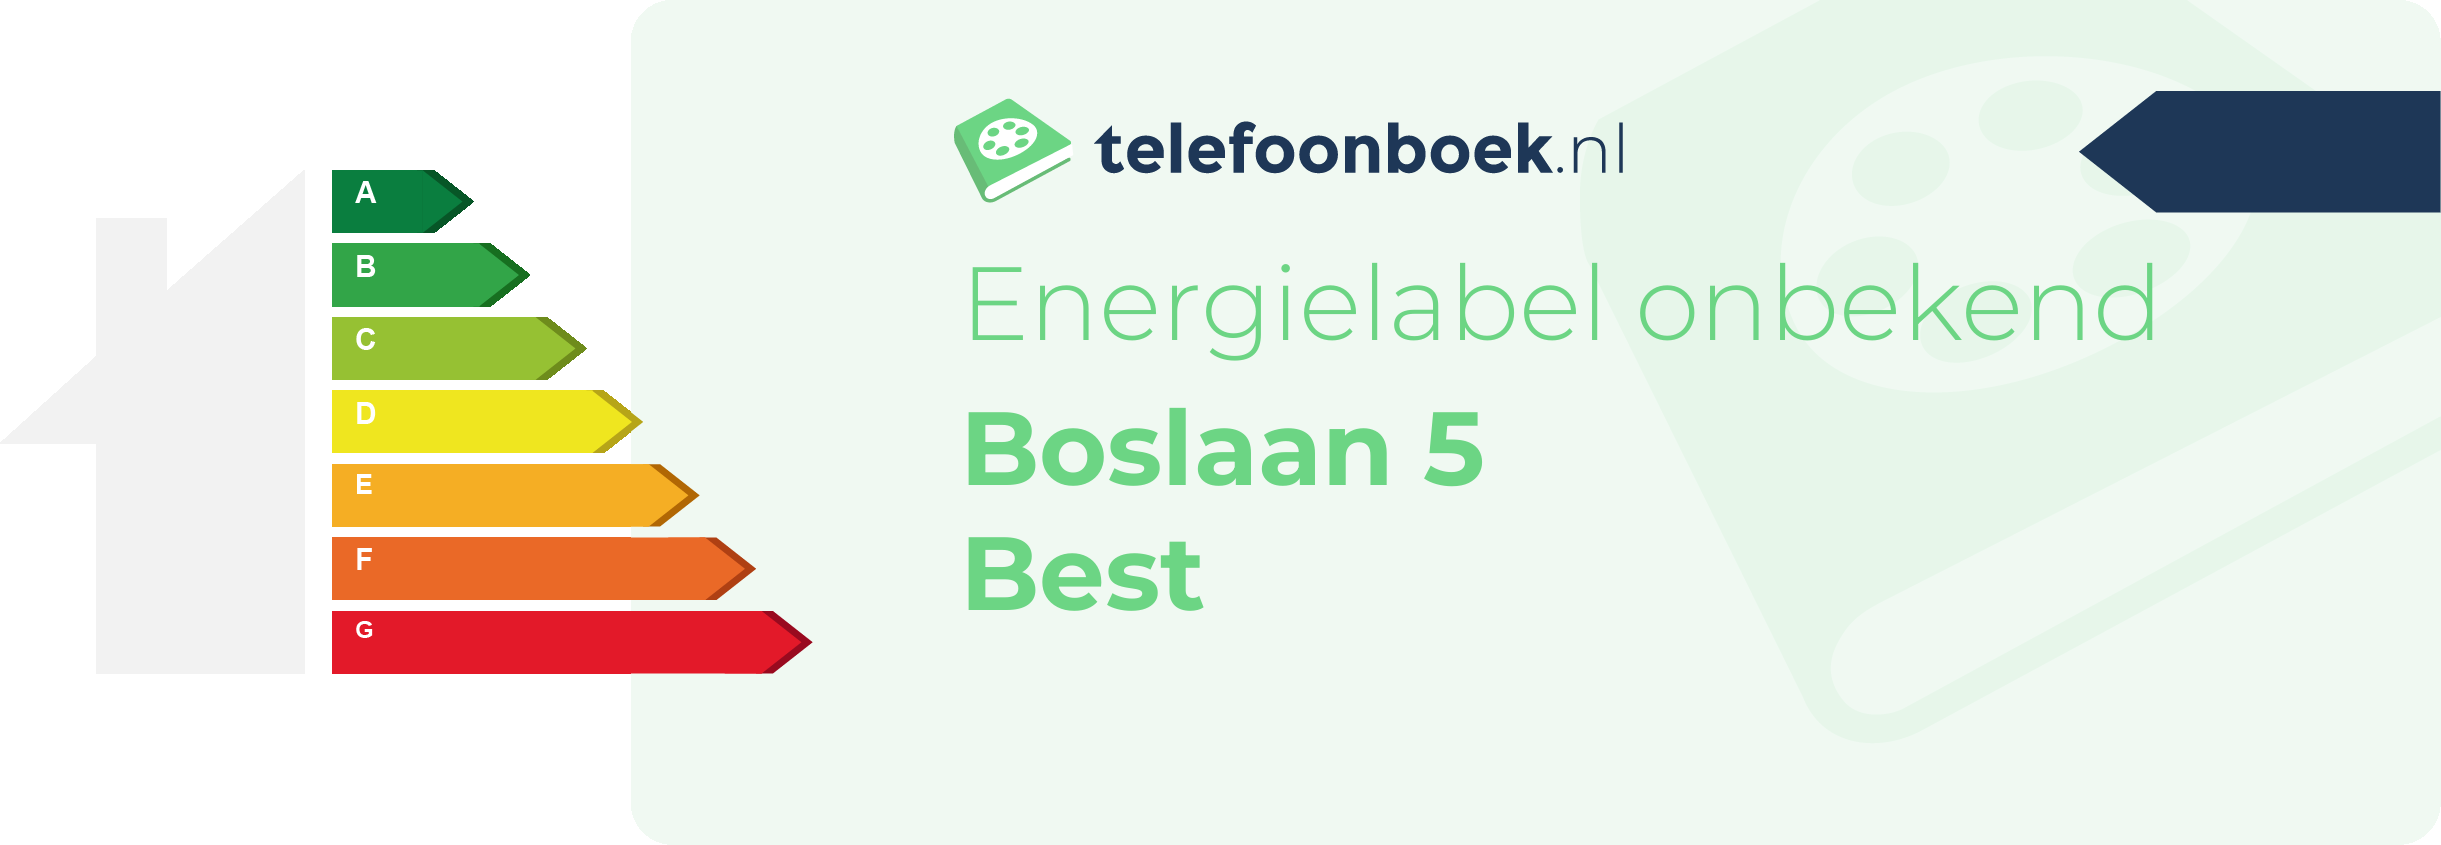 Energielabel Boslaan 5 Best